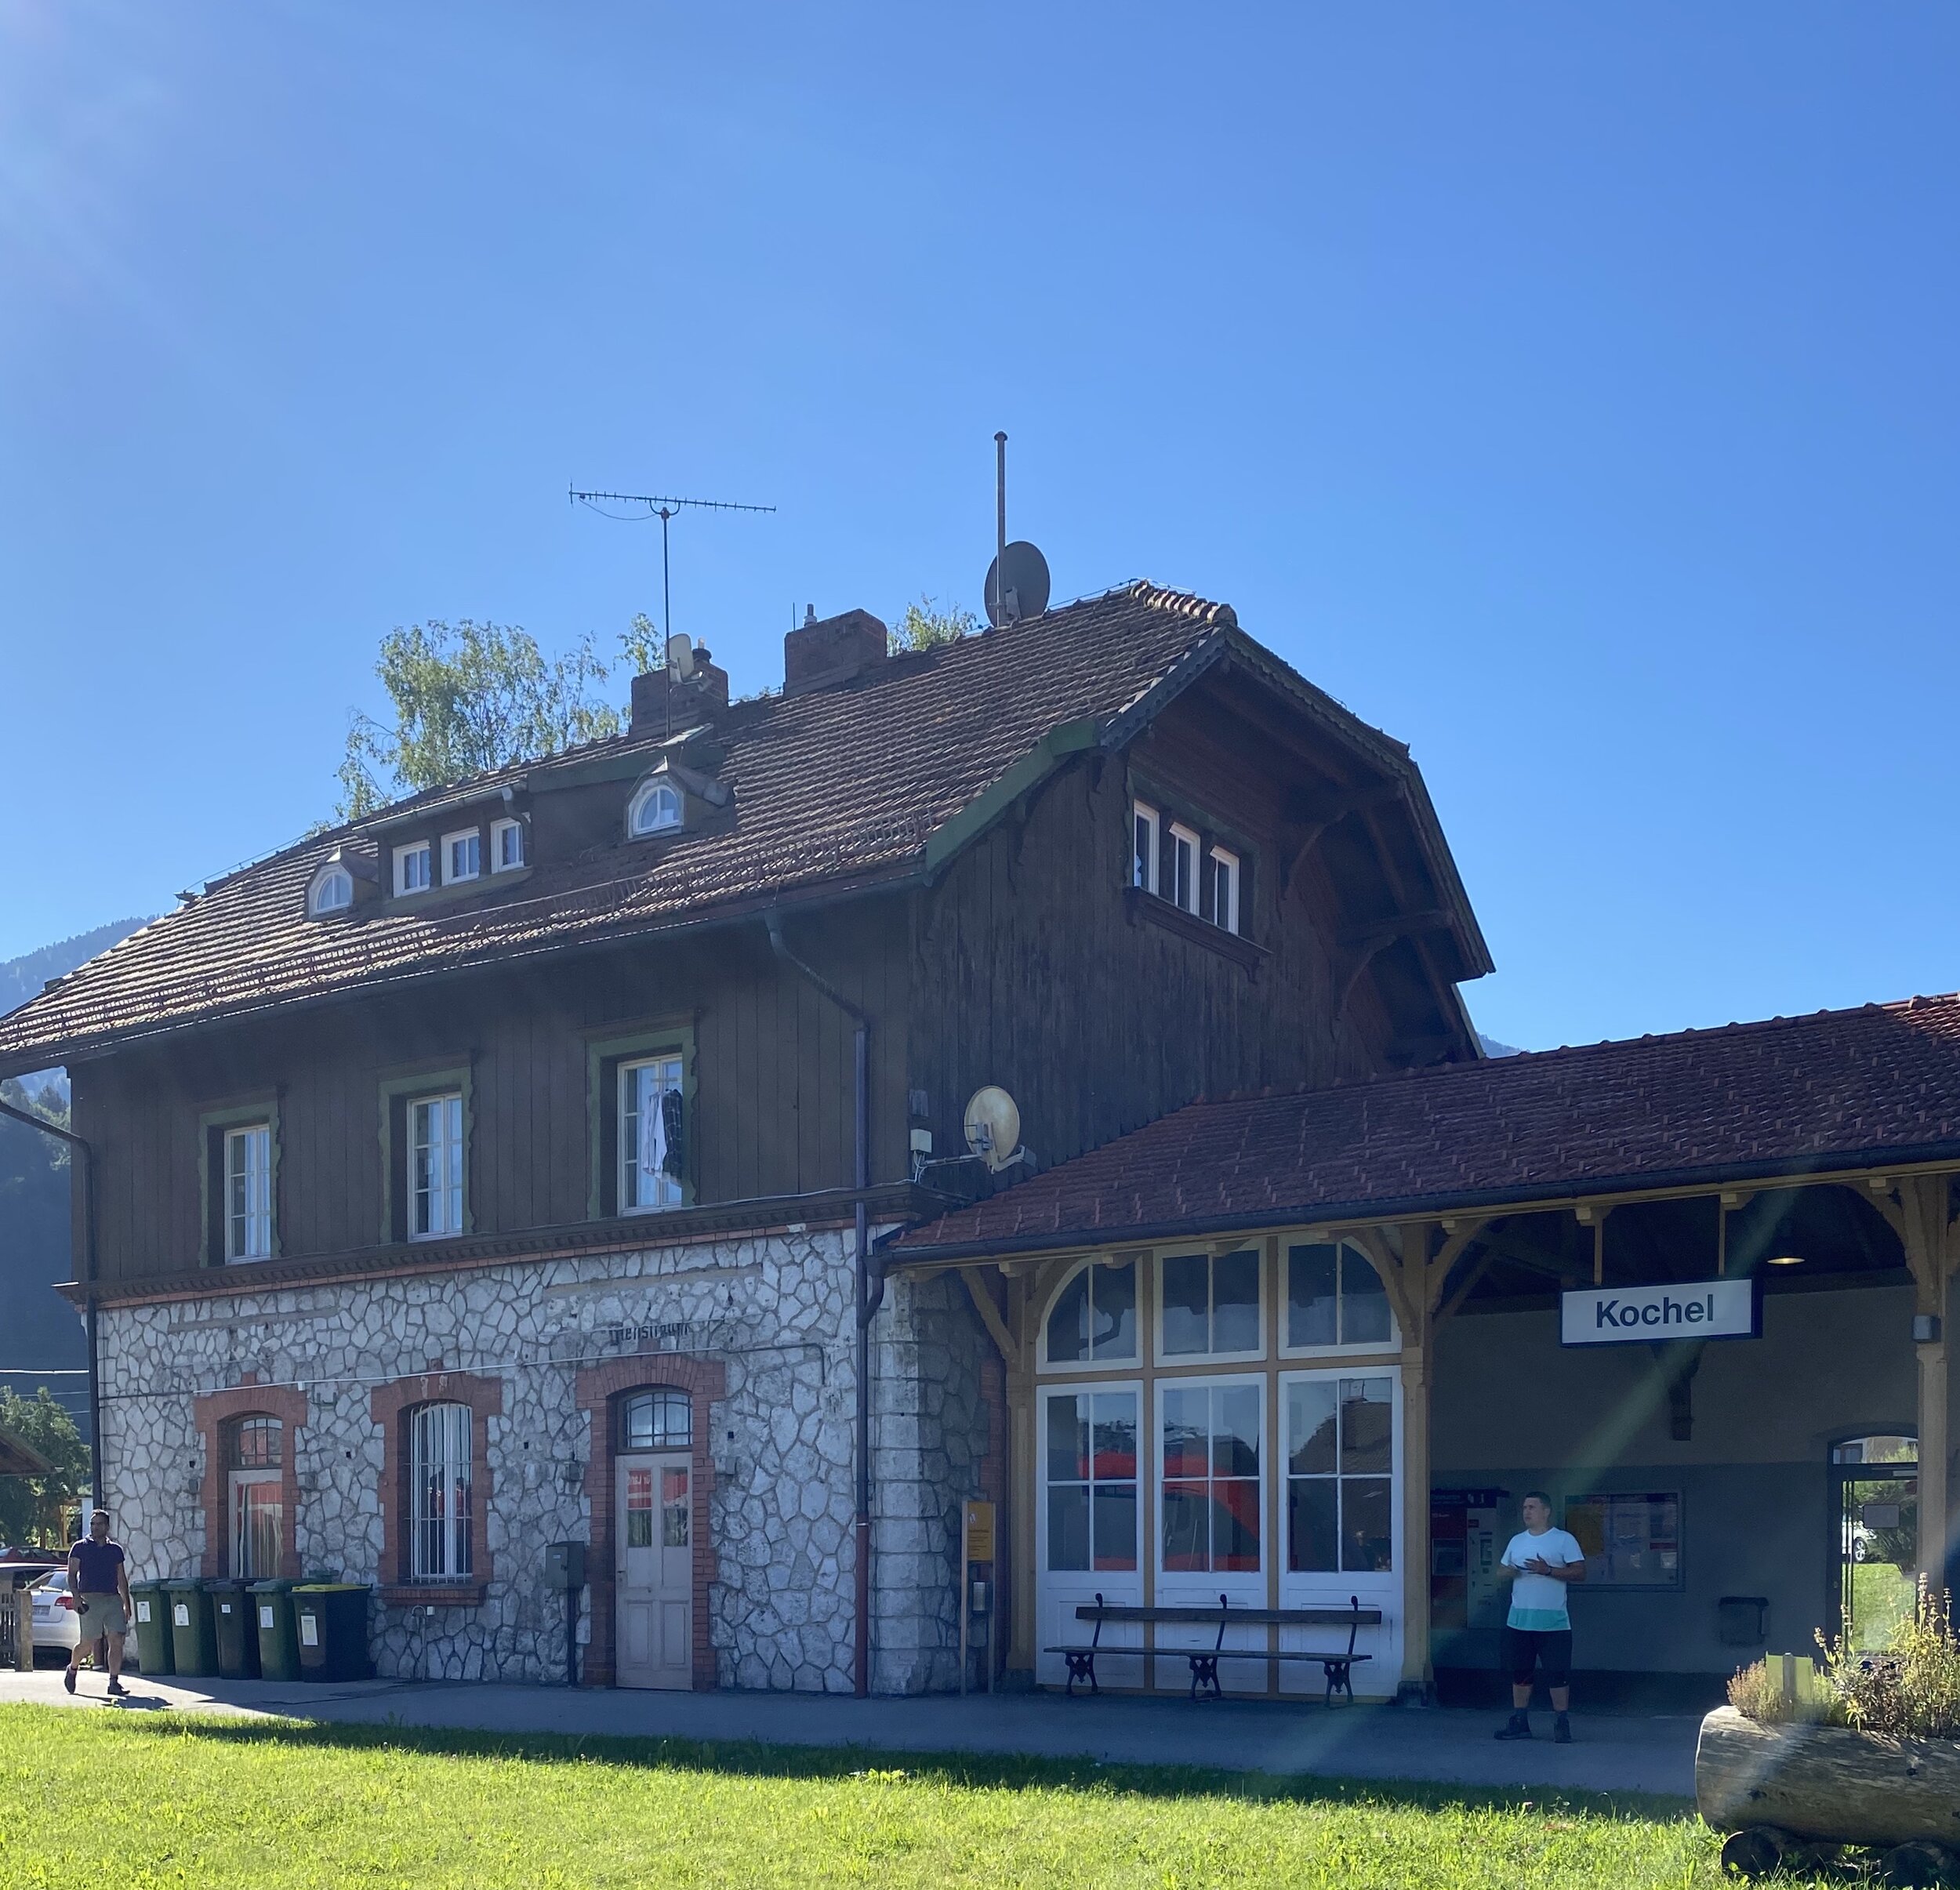 Tour-Start am Bahnhof Kochel am See